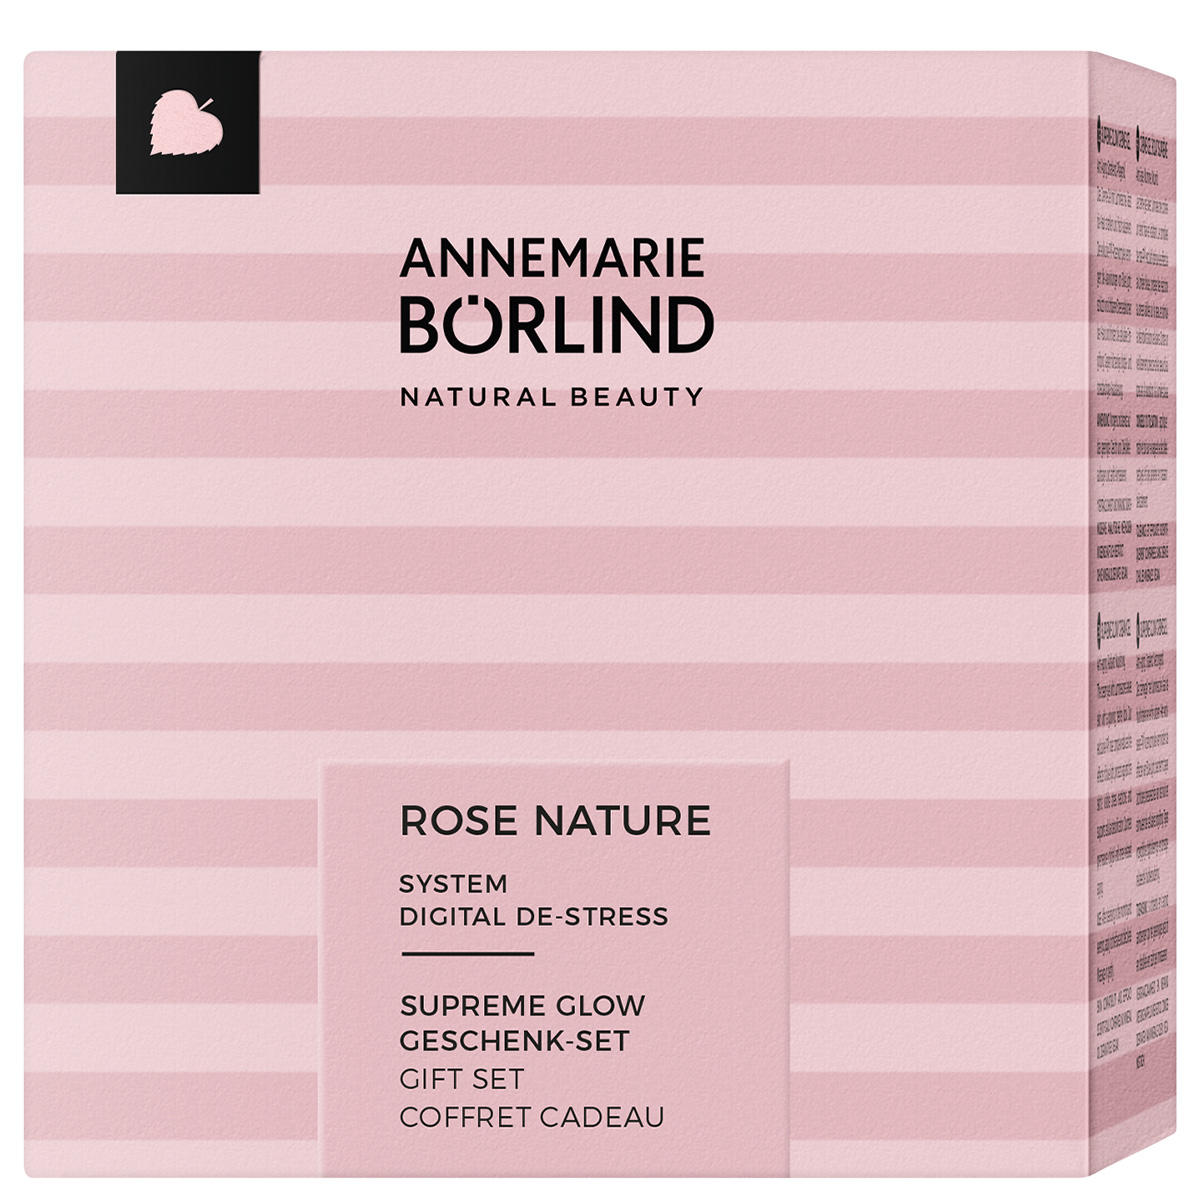 ANNEMARIE BÖRLIND ROSE NATURE SUPREME GLOW GESCHENK-SET Limited Edition  - 1